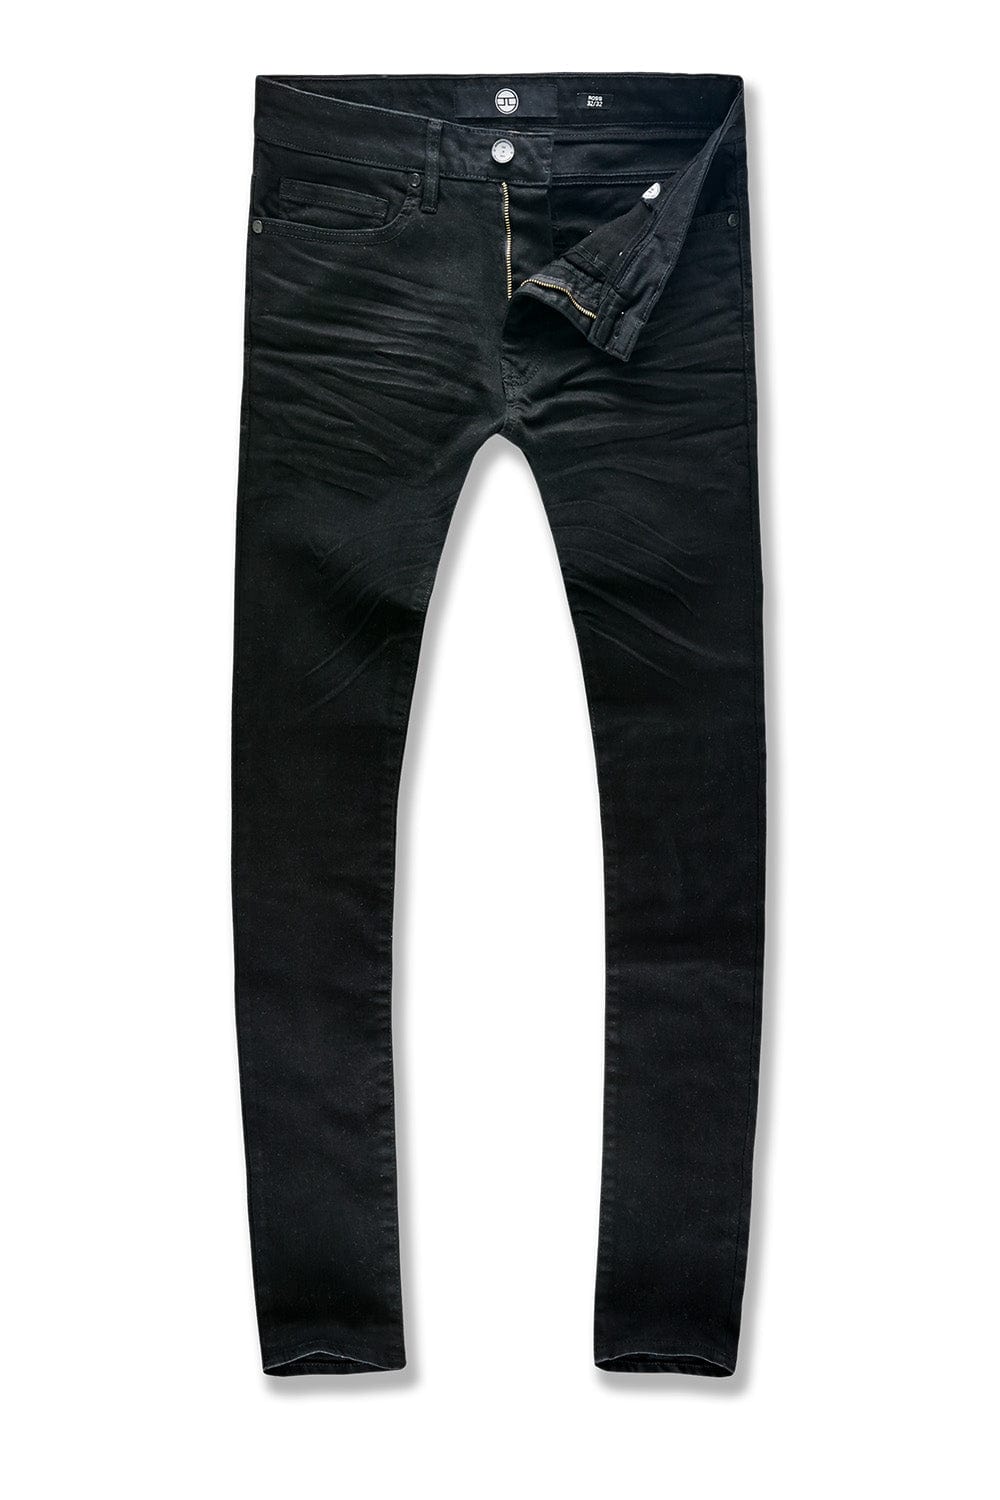 Jordan Craig Ross - Pure Tribeca Twill Pants (Core Colors) Black / 28/32